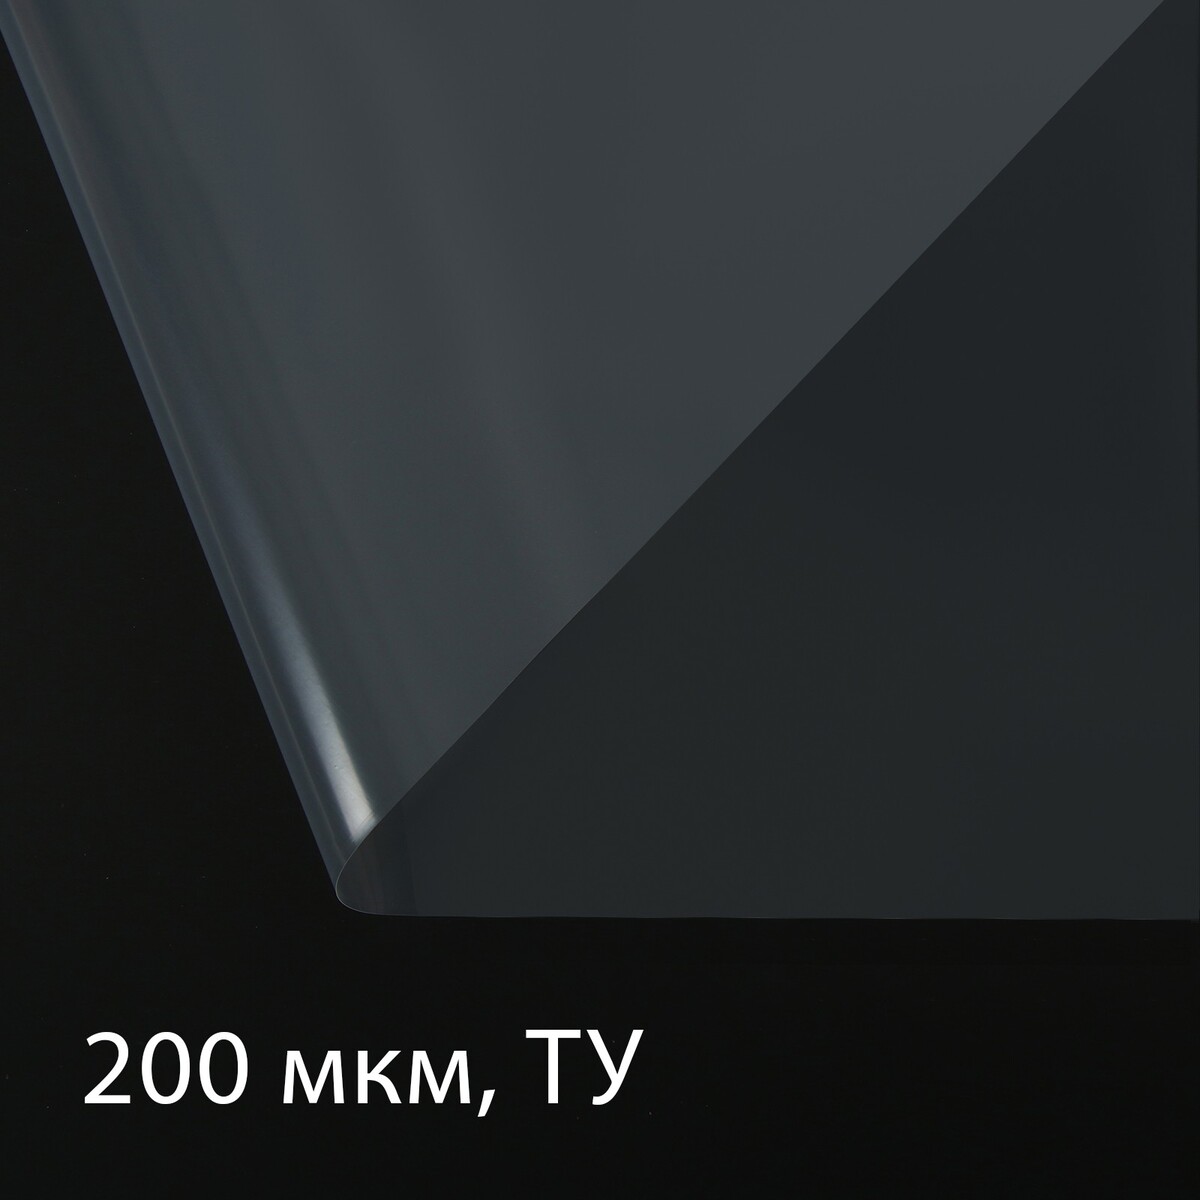 Пленка полиэтиленовая, толщина 200 мкм, прозрачная, 5 × 3 м, рукав (1.5 м × 2), эконом 50%